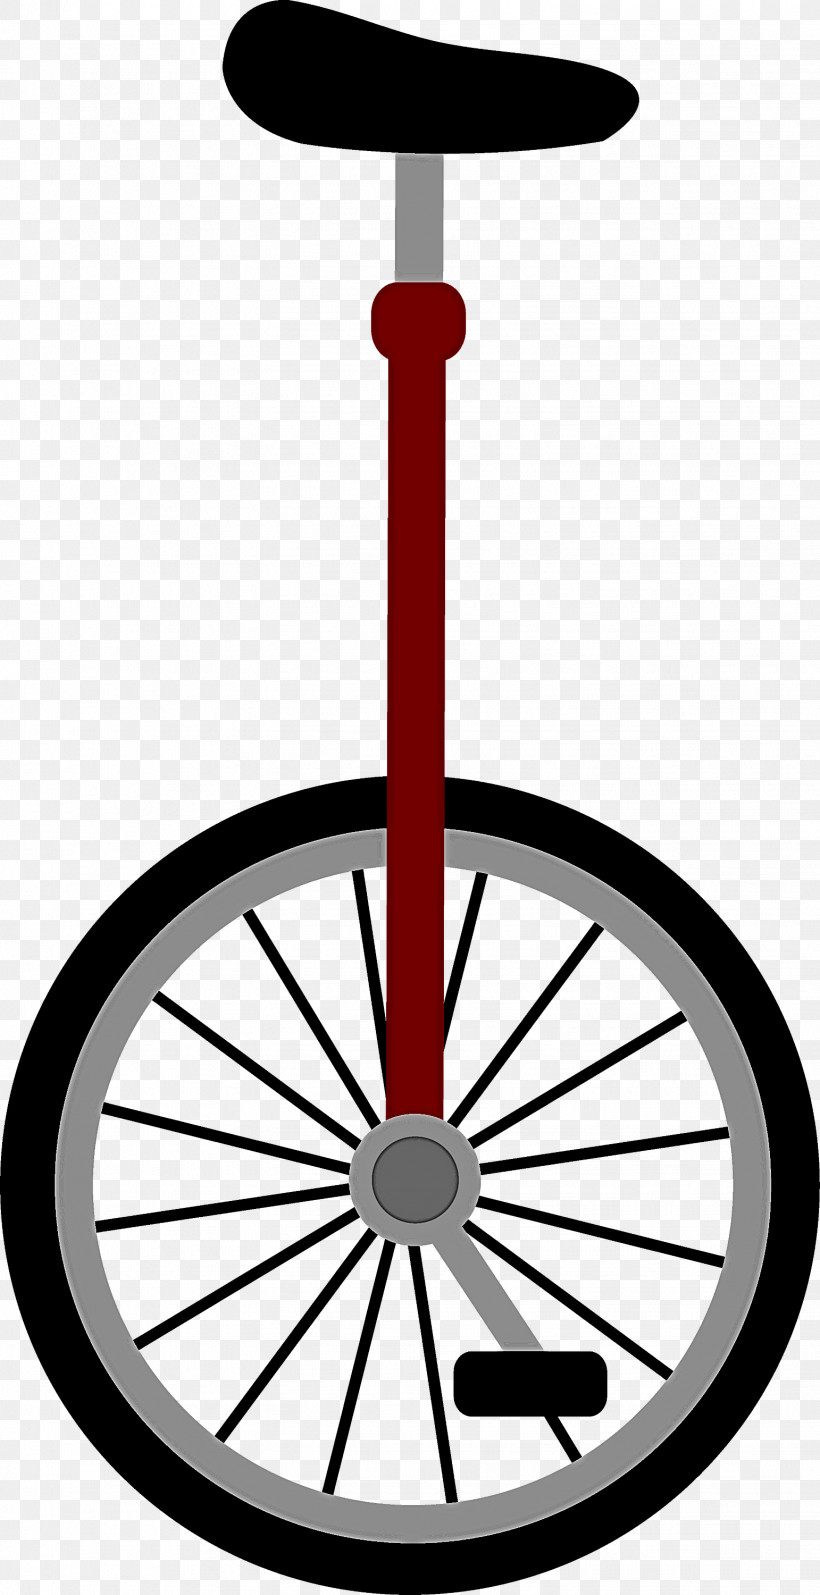 Wheel Automotive Wheel System Spoke Rim, PNG, 1542x3000px, Wheel, Automotive Wheel System, Rim, Spoke Download Free